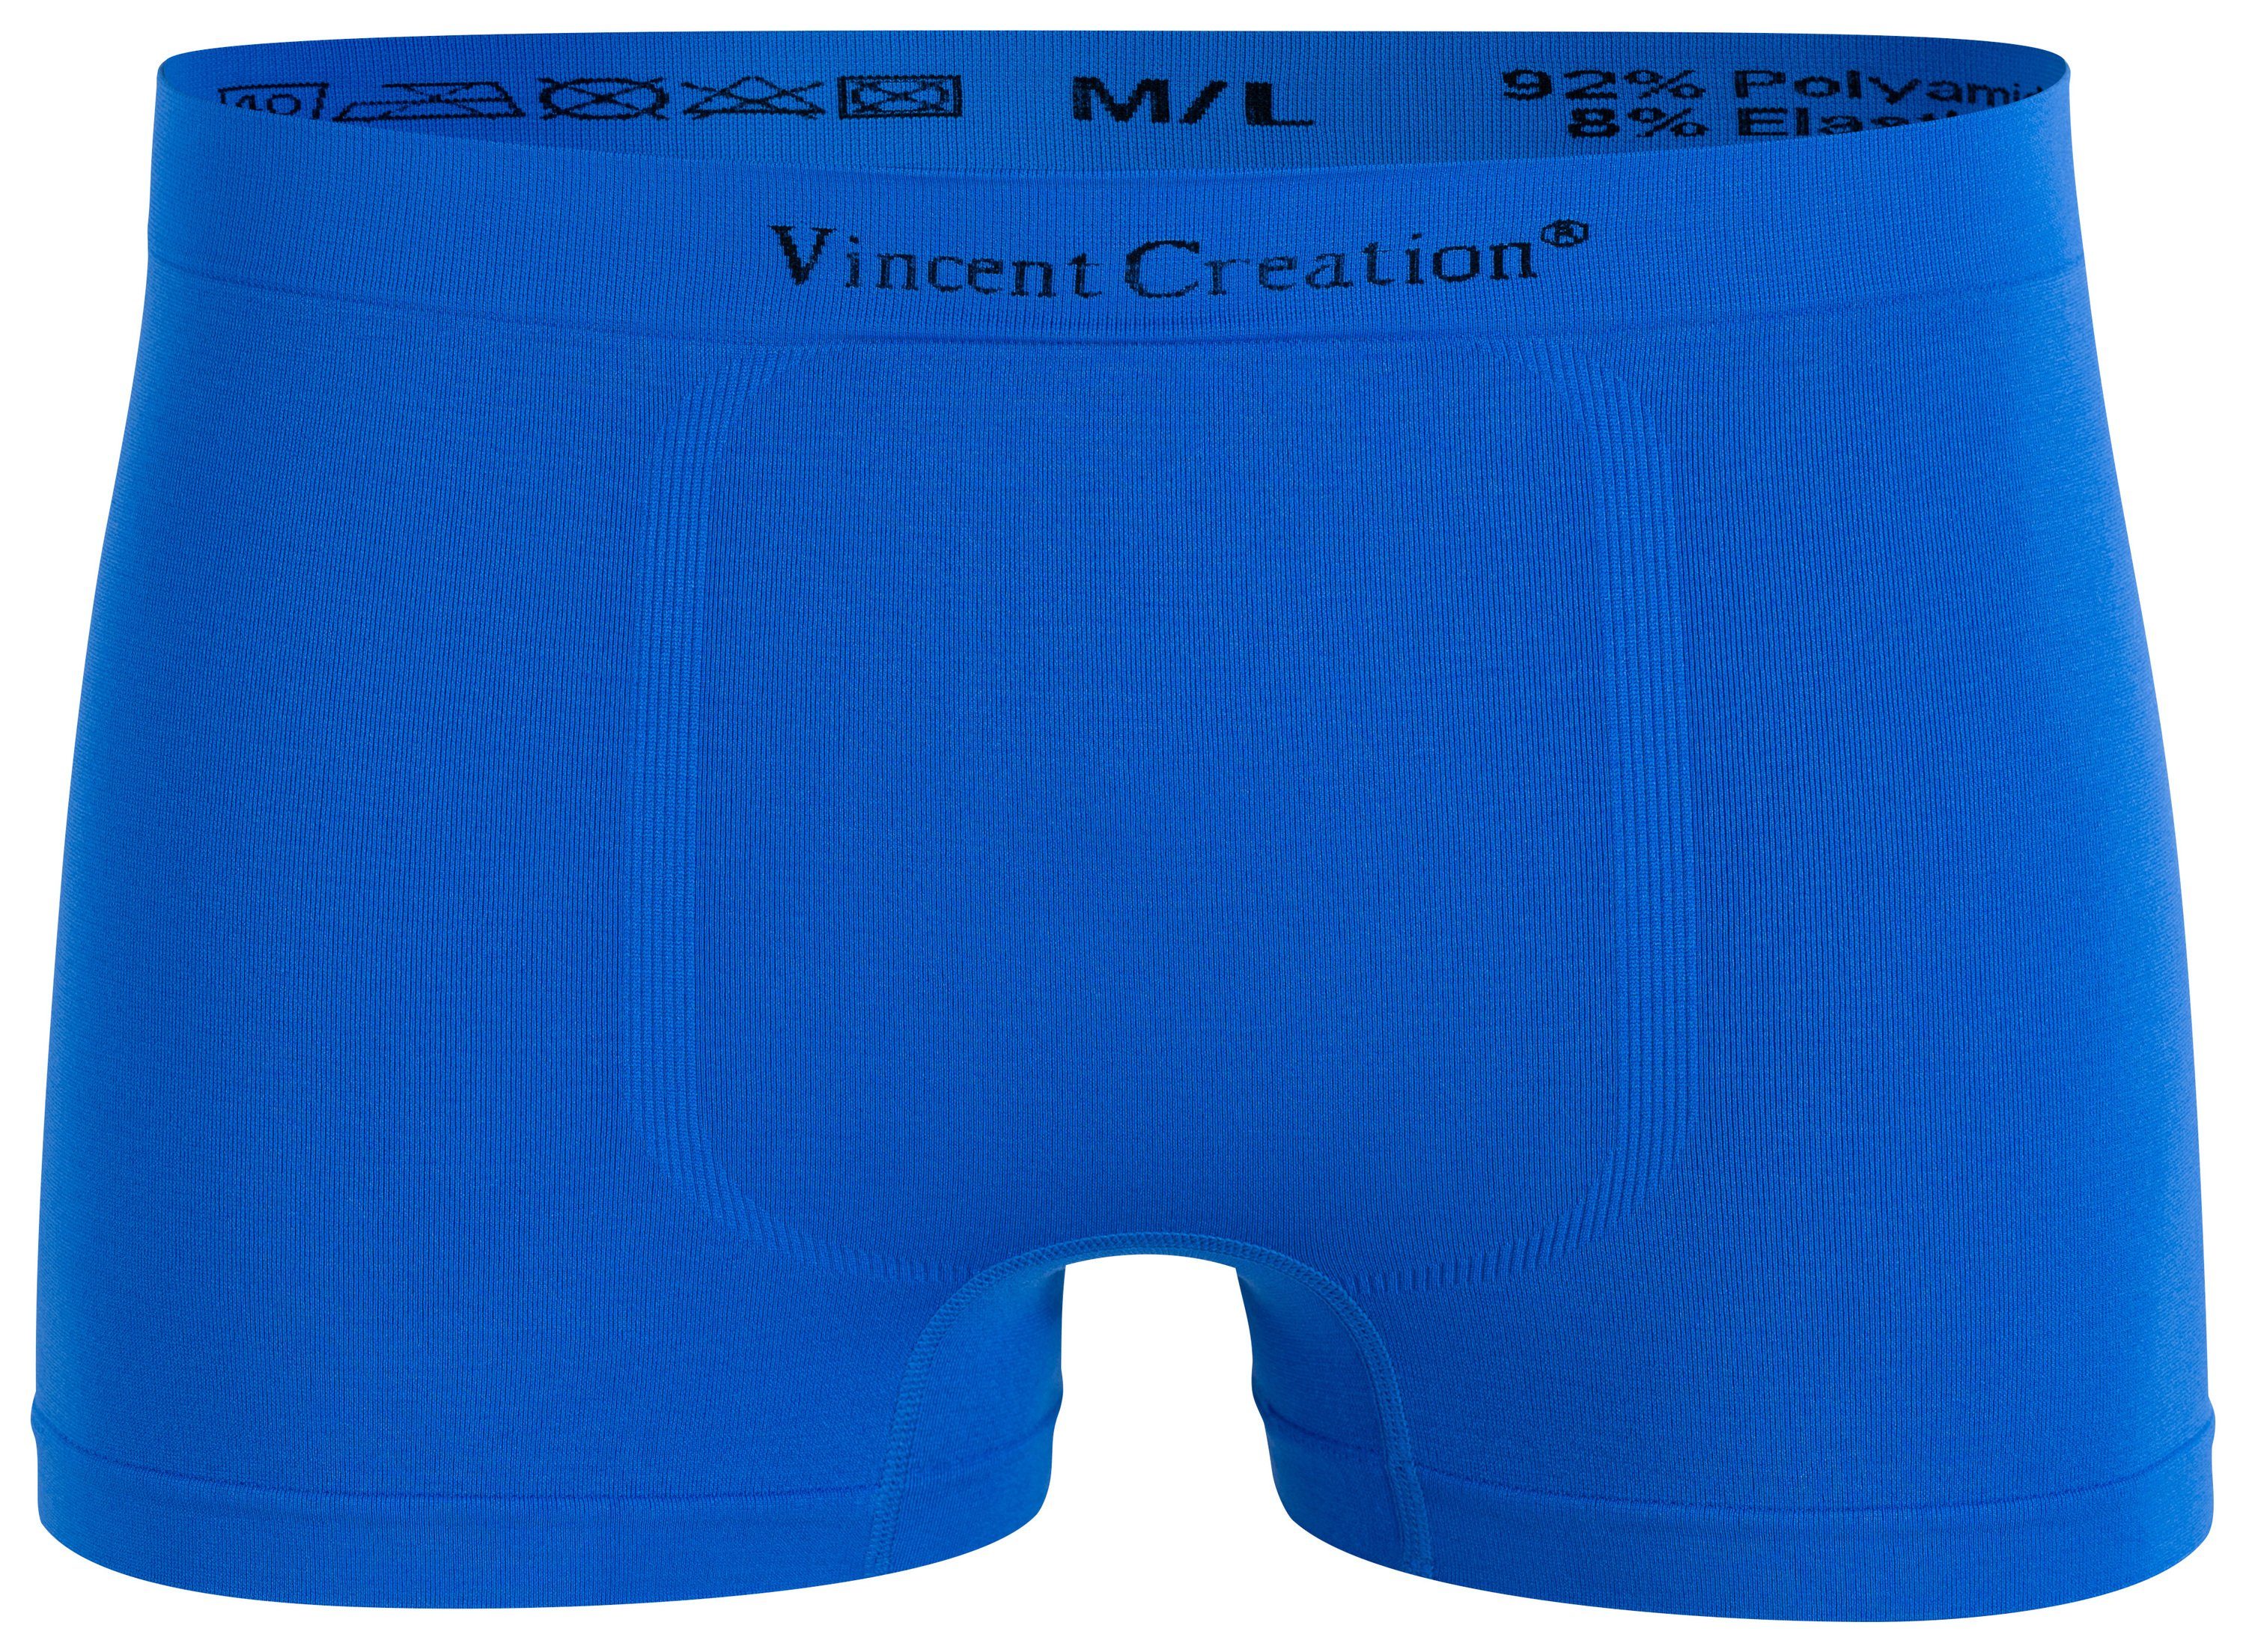 Creation® (12-St) - Microfaser-Qualität Vincent Seamless weiche 12er Microfaser schw/rot/blau/grau Pack, Boxershorts